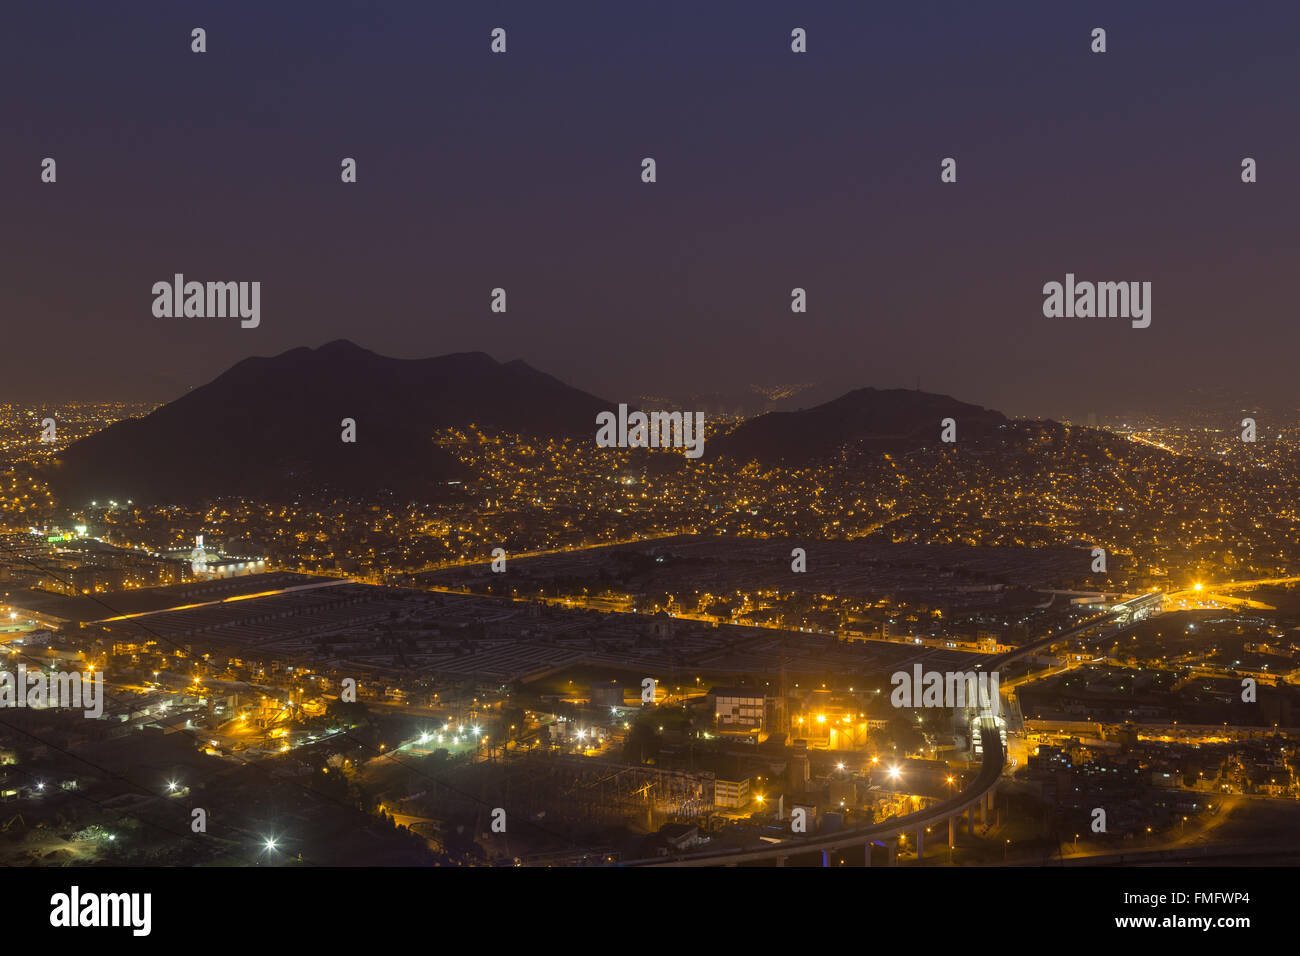 Panoramablick von der peruanischen Hauptstadt Lima vom Cerro San Cristobal bei Nacht. Stockfoto